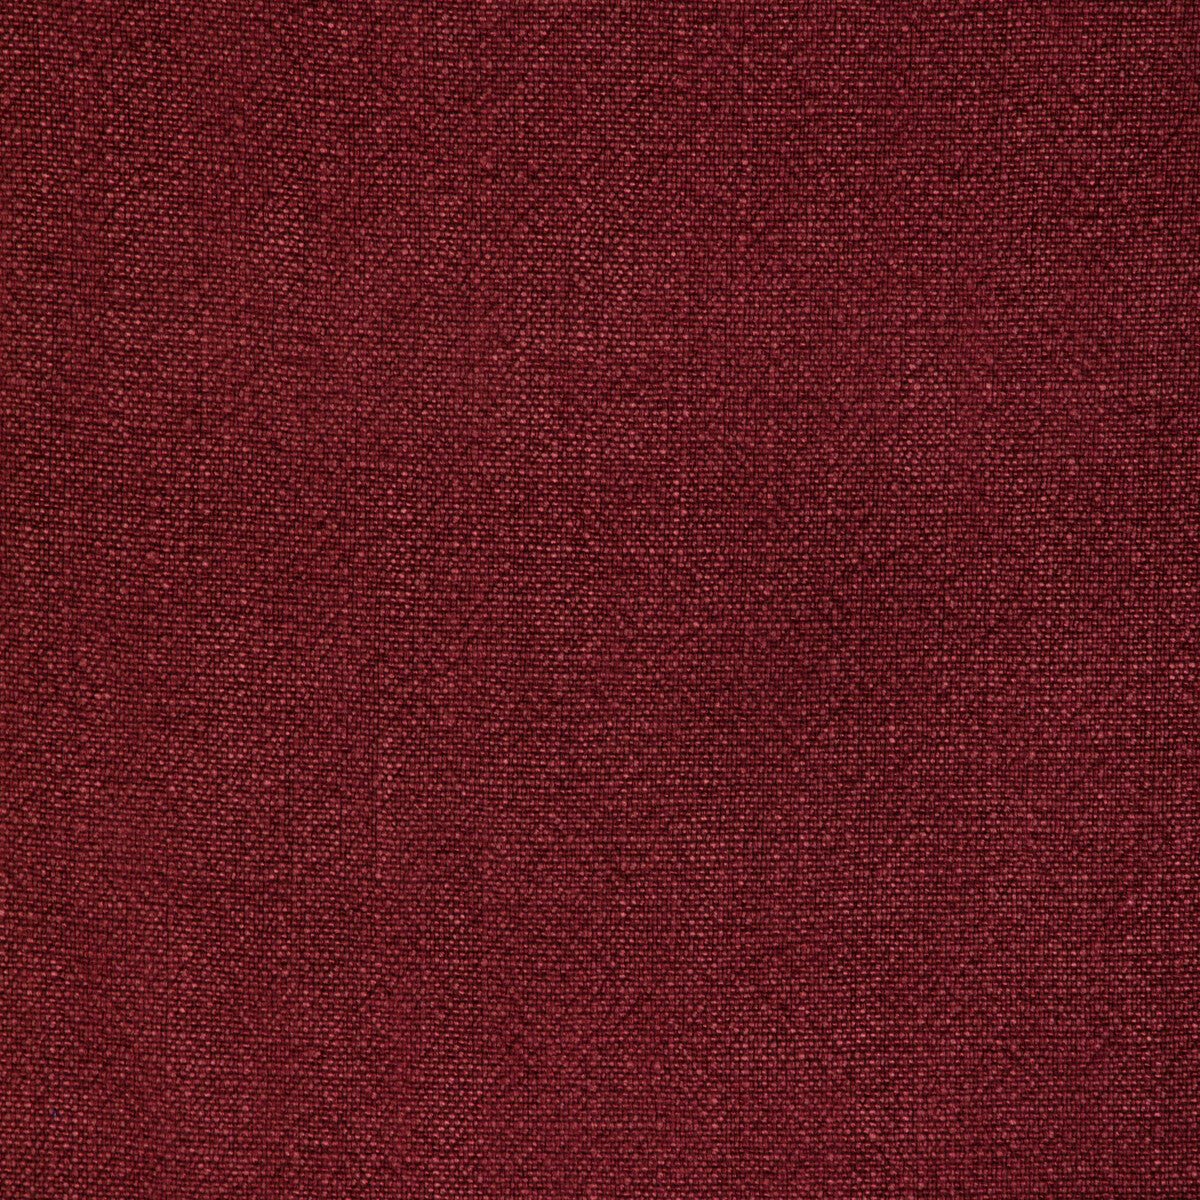 Kravet Basics fabric in 35189-9 color - pattern 35189.9.0 - by Kravet Basics